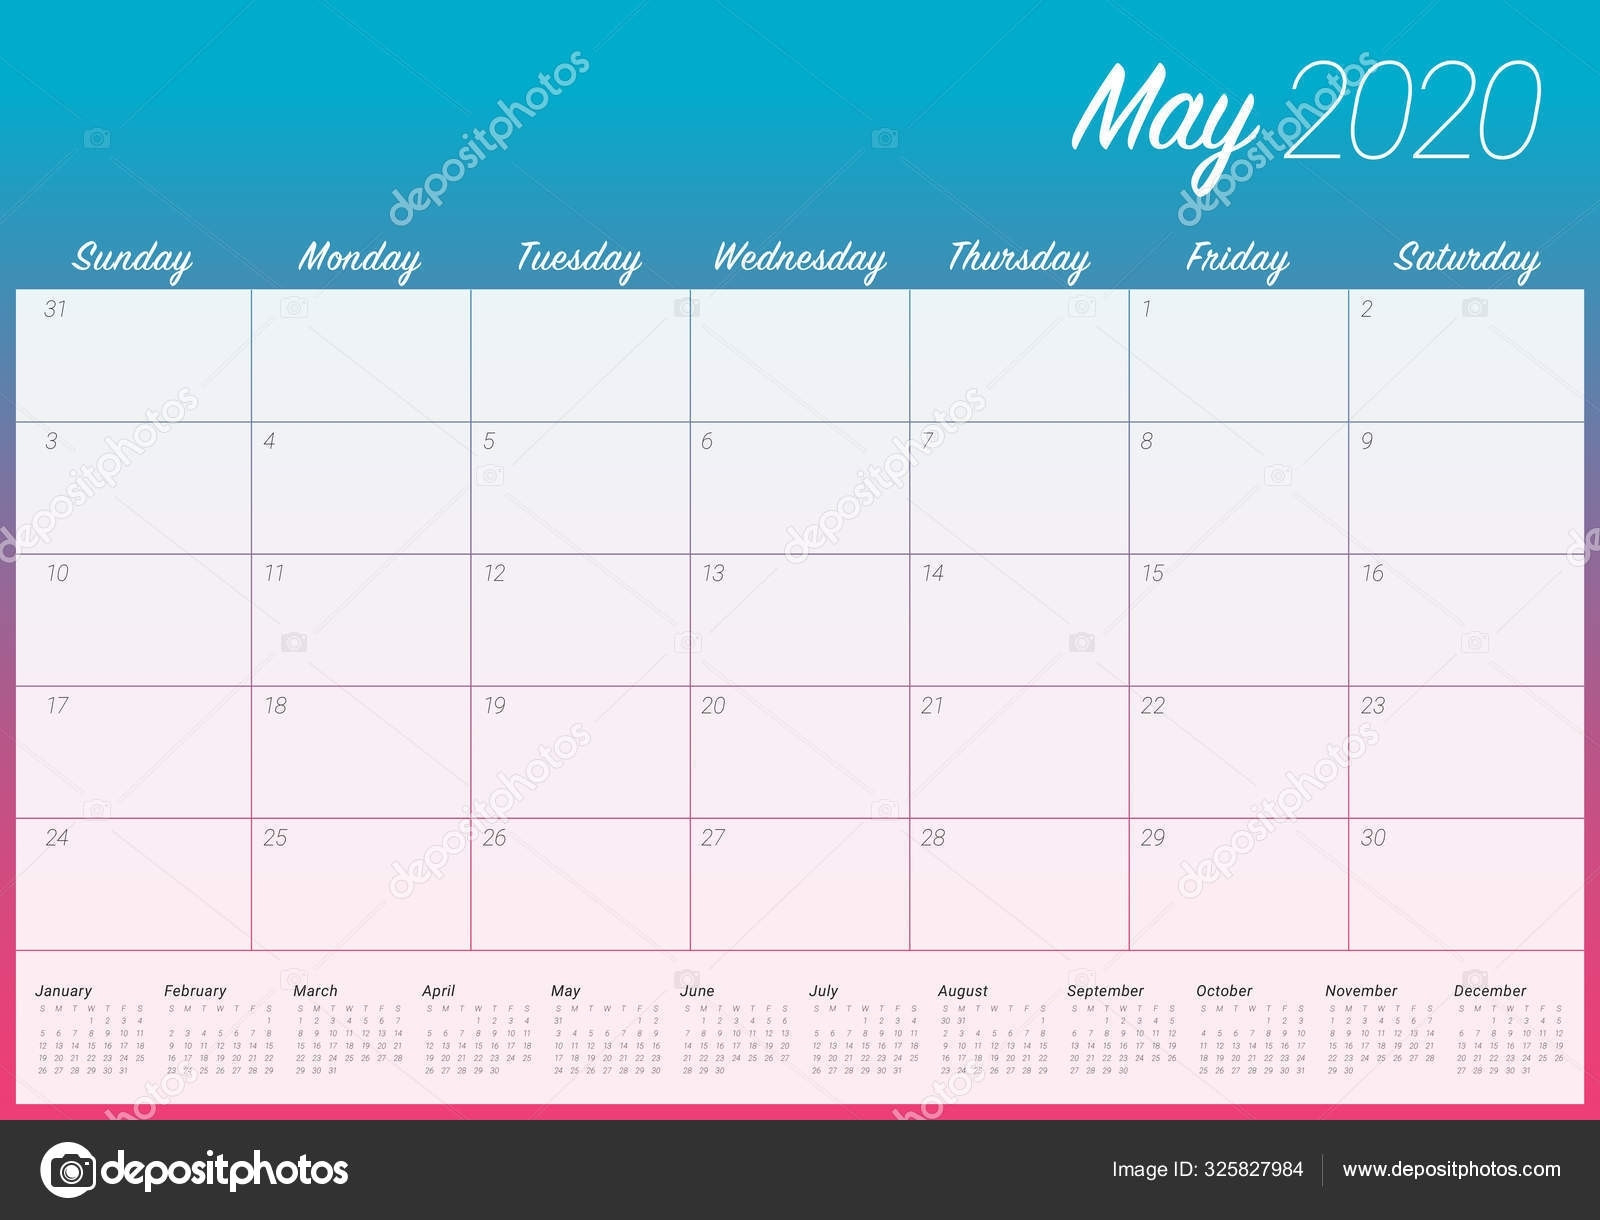 Depo 12 Week Calendar | Printable Calendar Template 2021  Depo Provera Calendar Printable